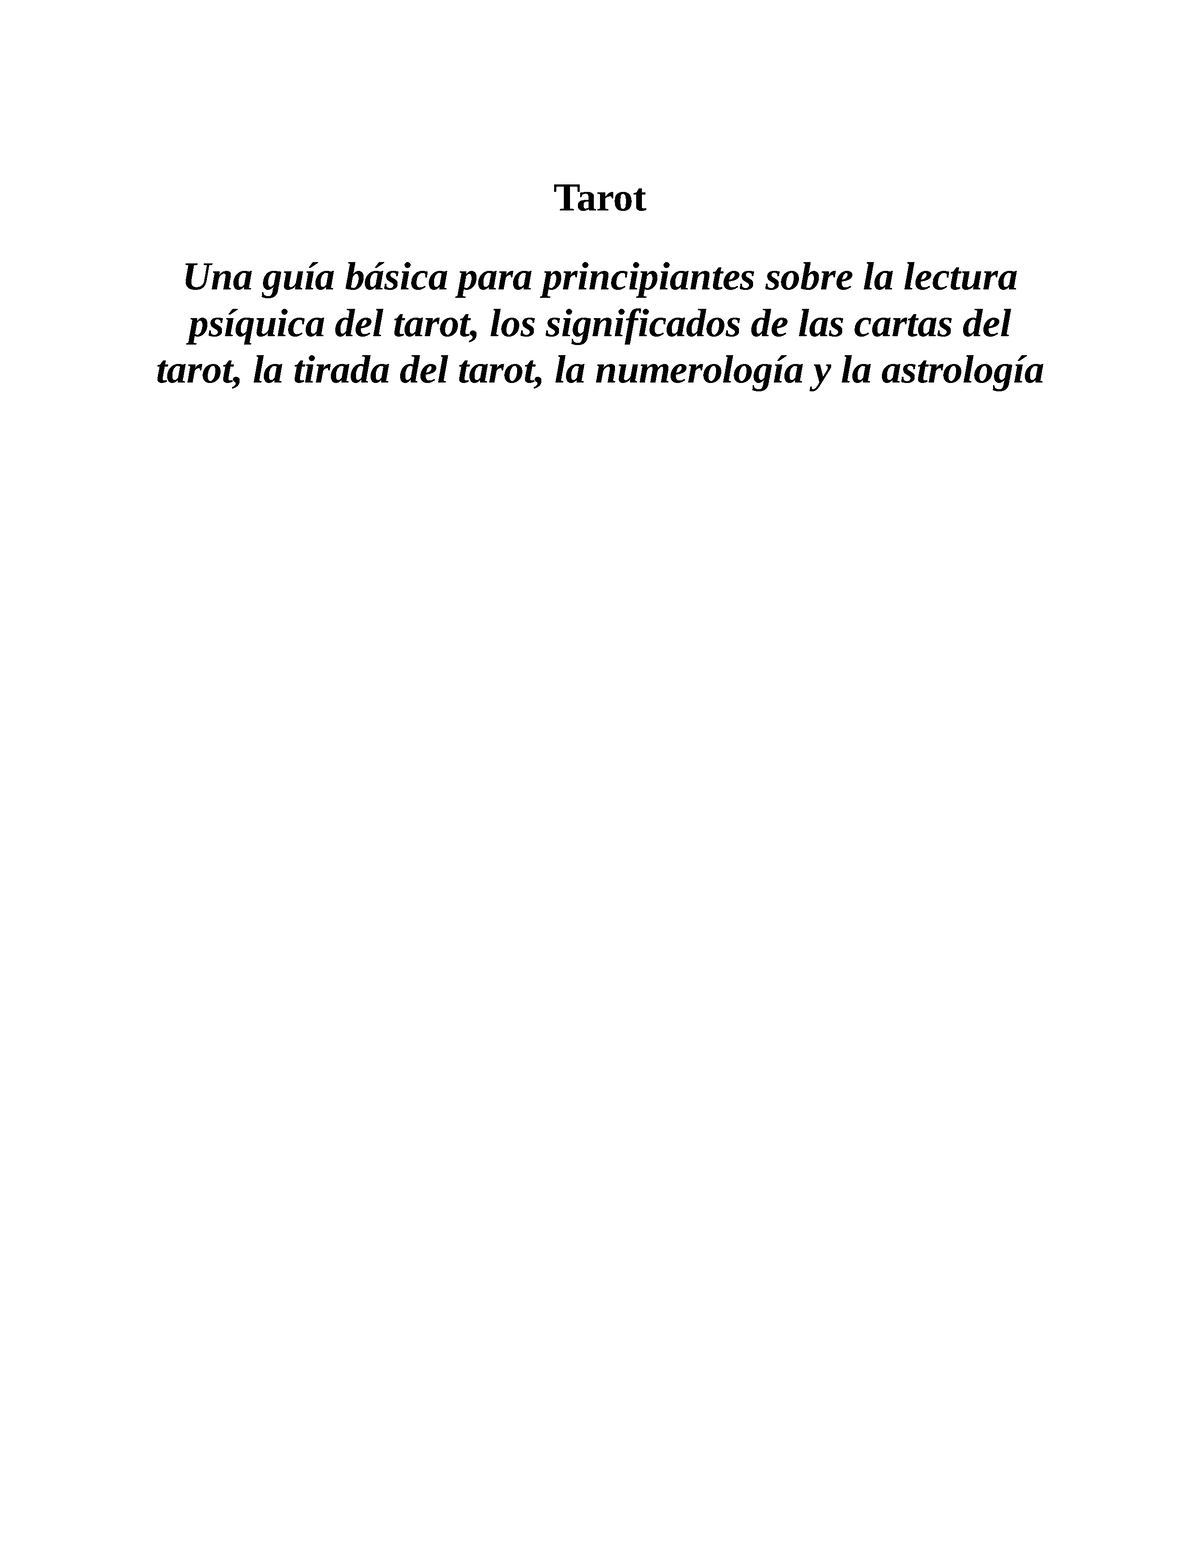 Tarot (Spanish Edition): Una guía básica para principiantes sobre la  lectura psíquica del tarot, los significados de las cartas del tarot, la  tirada